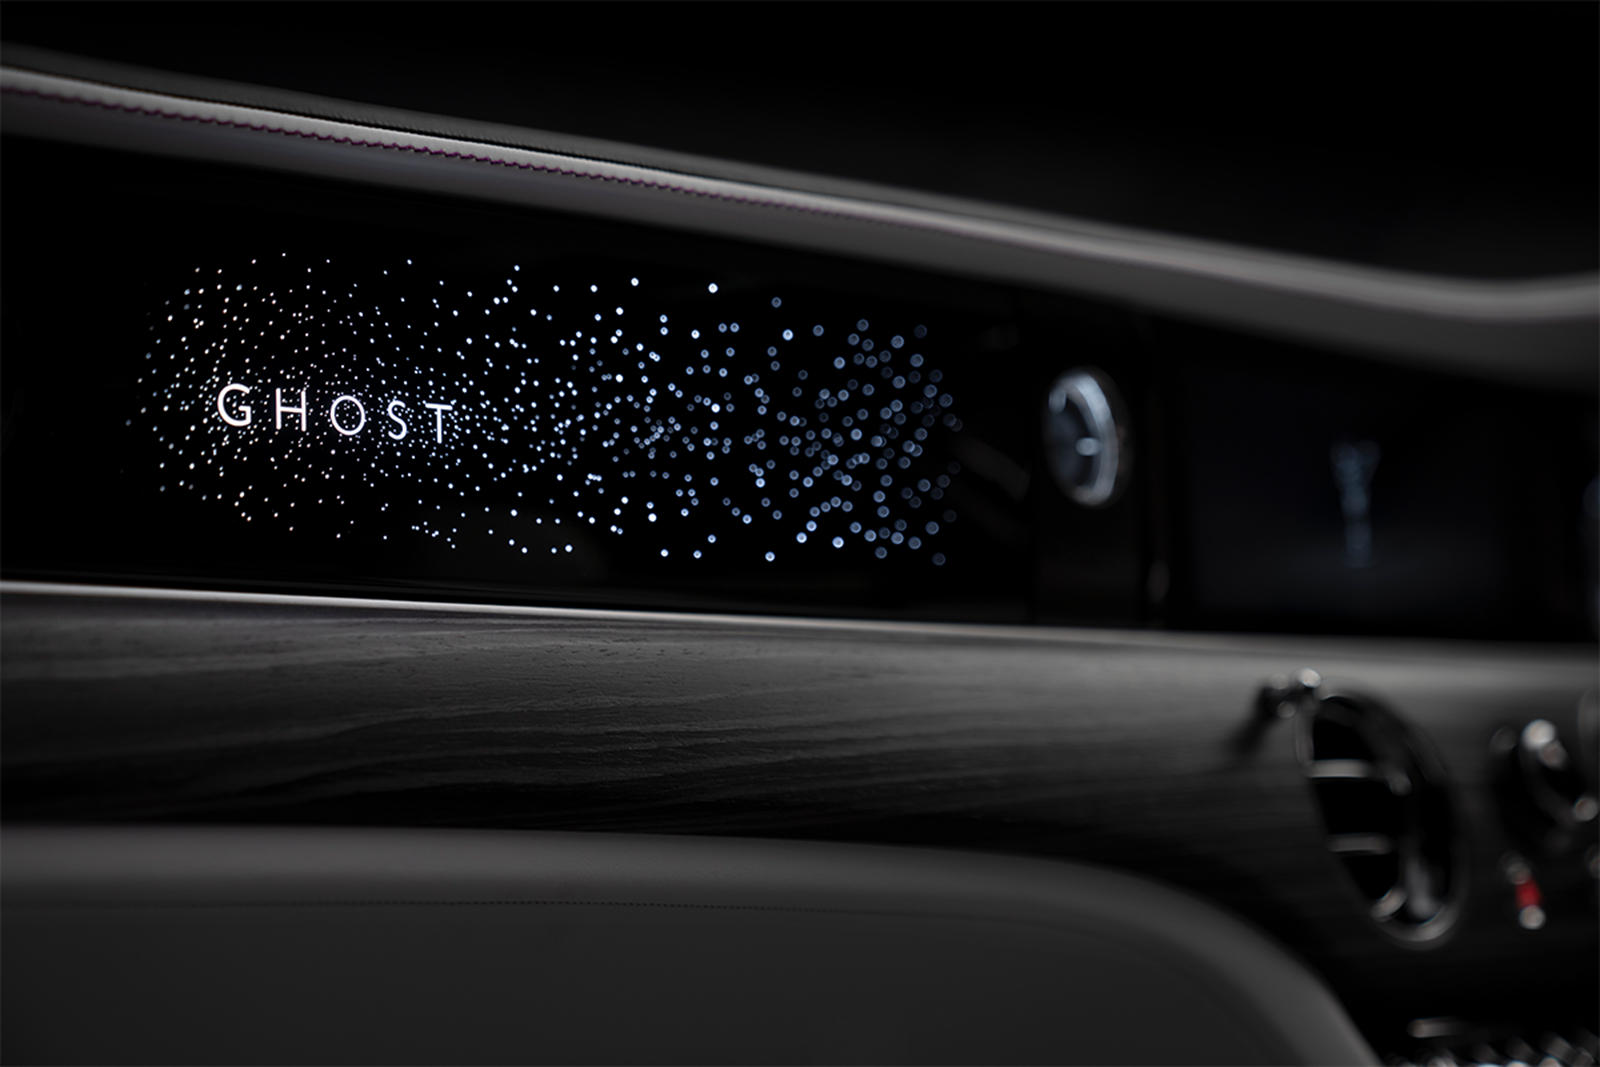 Название Ghost, расположенное перед пассажиром на переднем сиденье, подсвечивается и окружено более чем 850 звездами, излучающими мягкий свет в салон. Когда машина выключена, созвездие полностью исчезает. Нововведение следует за знаменитым хедлайнеро